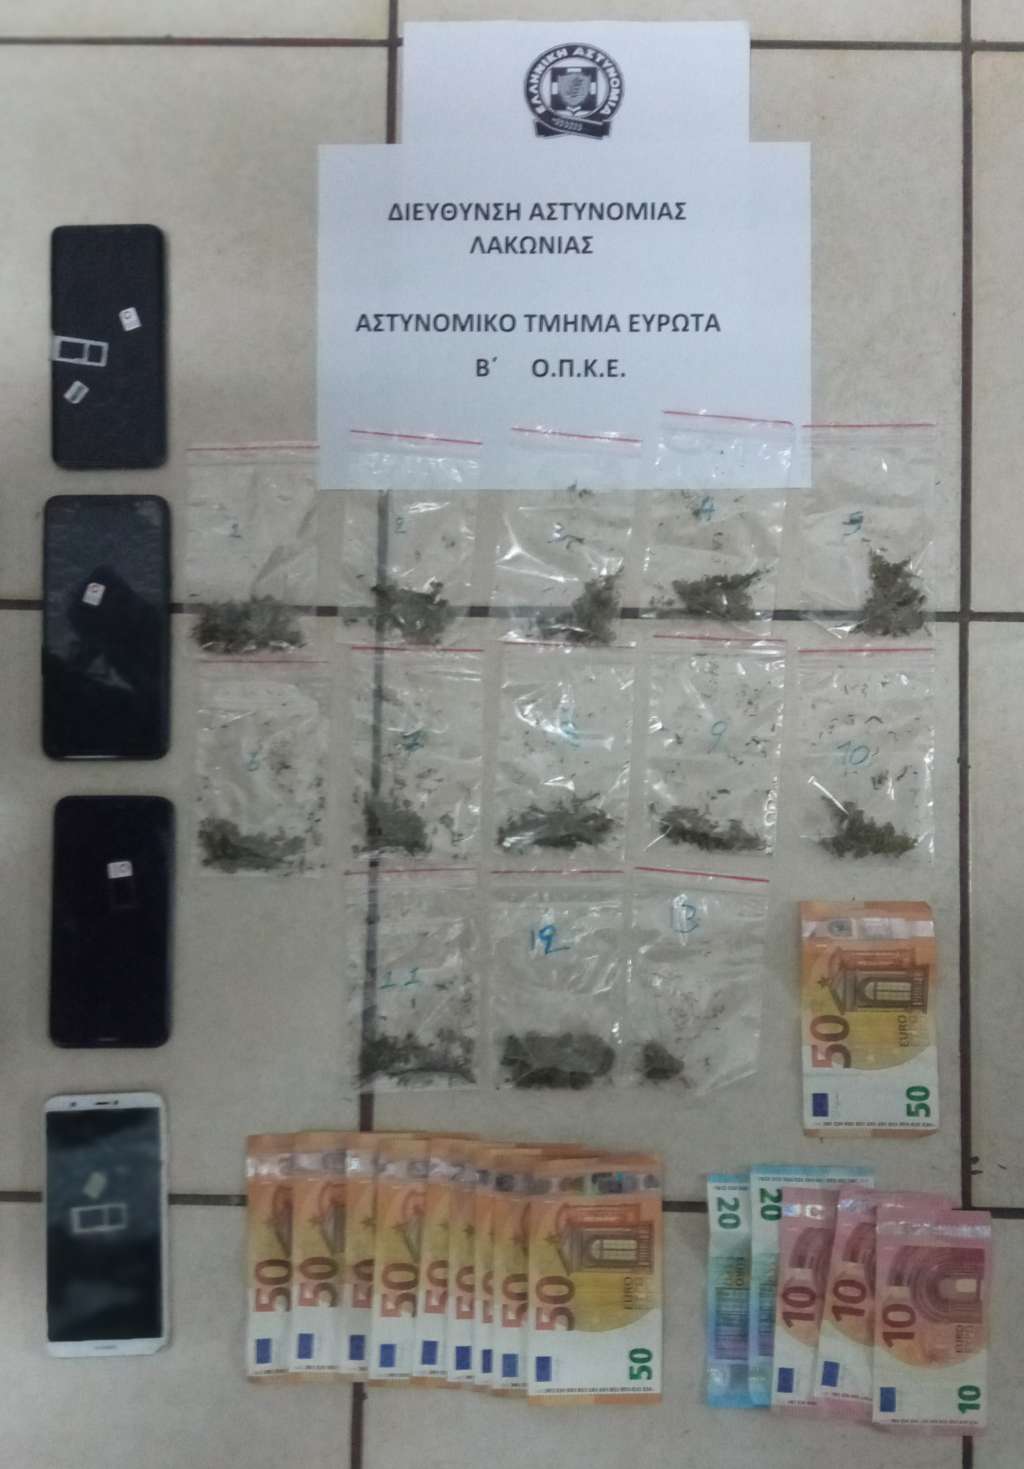 Λακωνία: Συνελήφθησαν τέσσερα άτομα για ναρκωτικά - ΠΕΛΟΠΟΝΝΗΣΟΣ